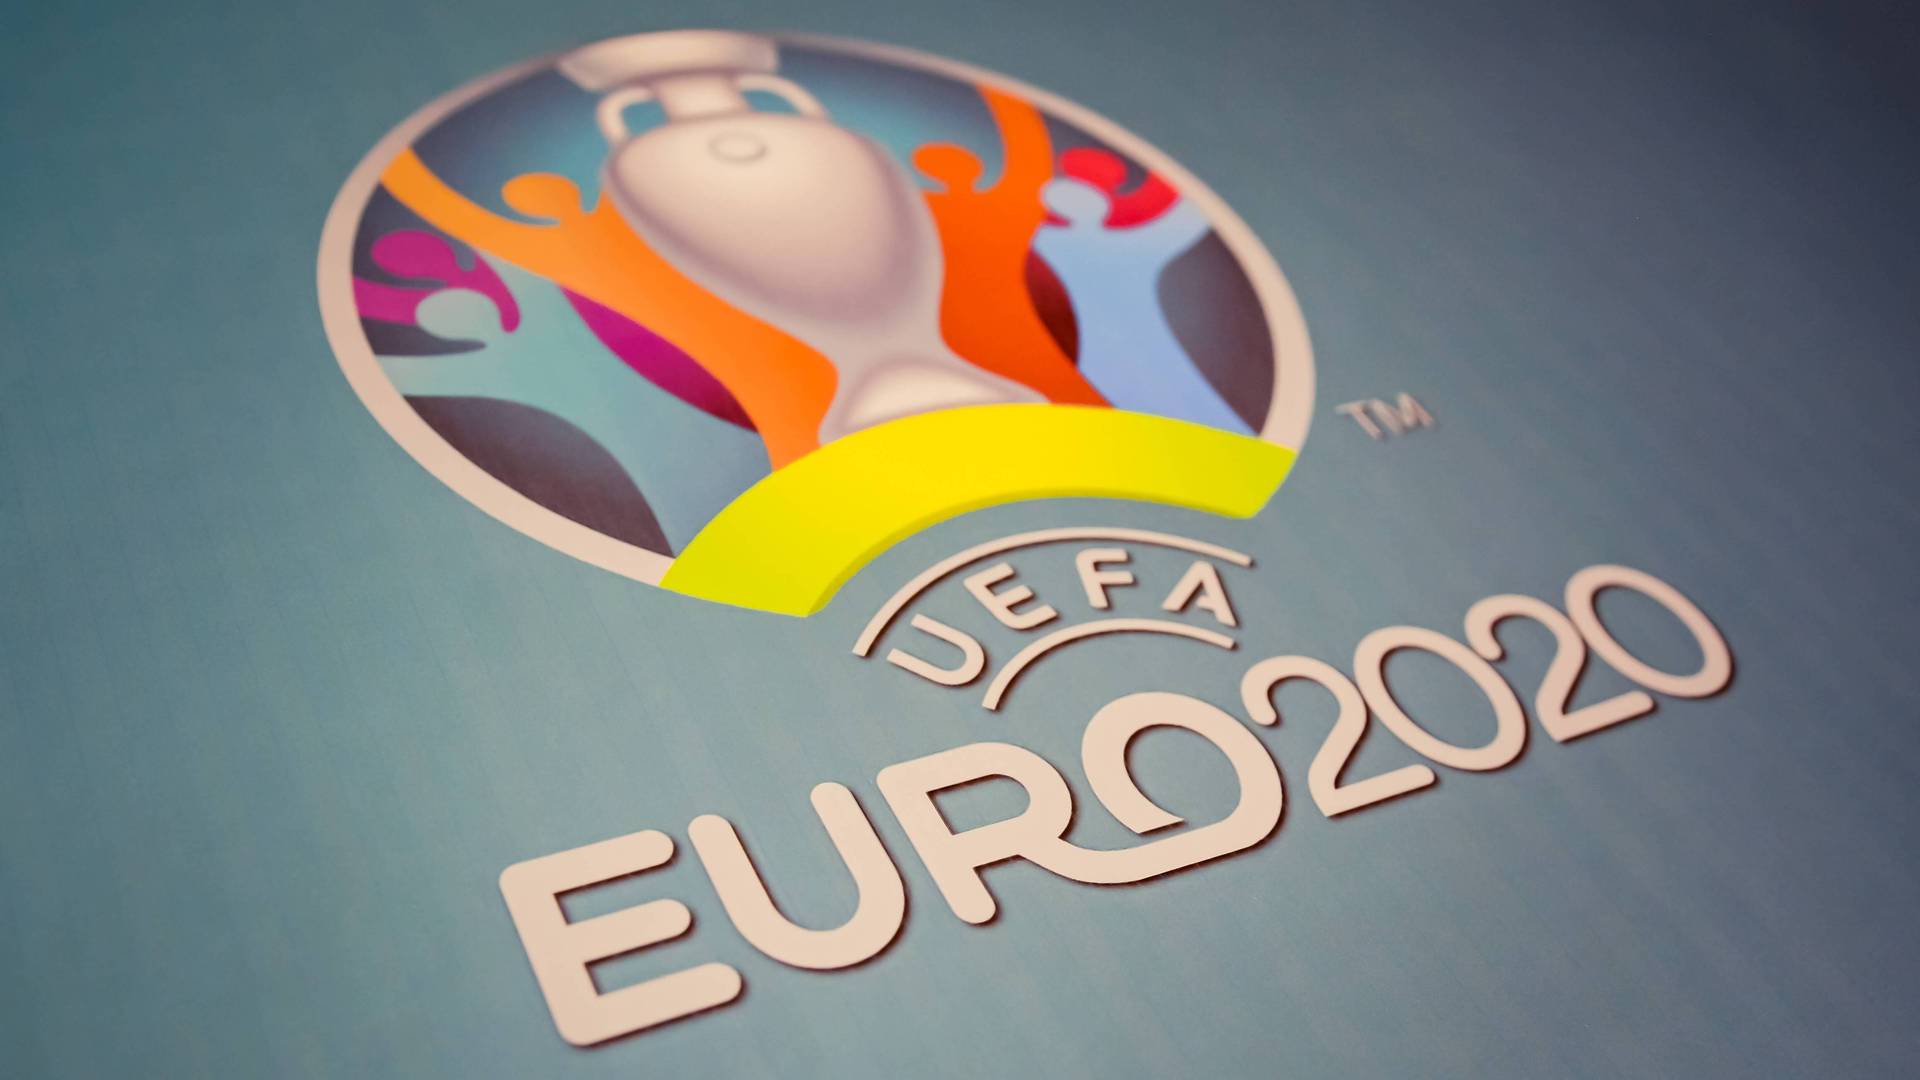 Präsentation des Logos für die Fußball-Europameisterschaft 2020